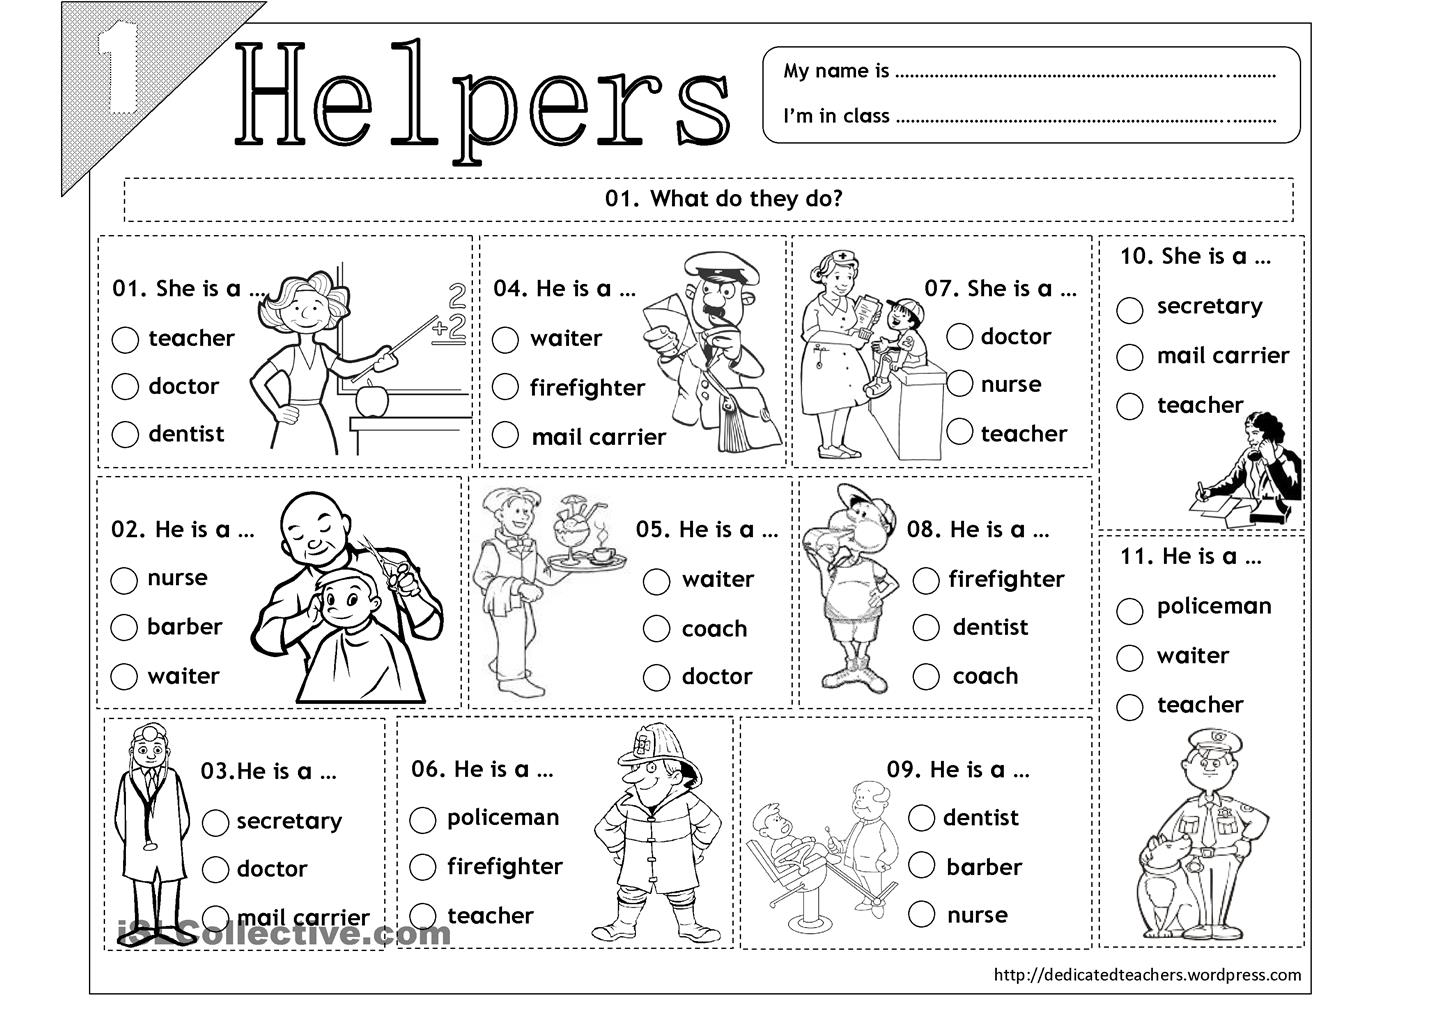 15 Best Images of Free Printable Worksheets Community Helpers Preschool